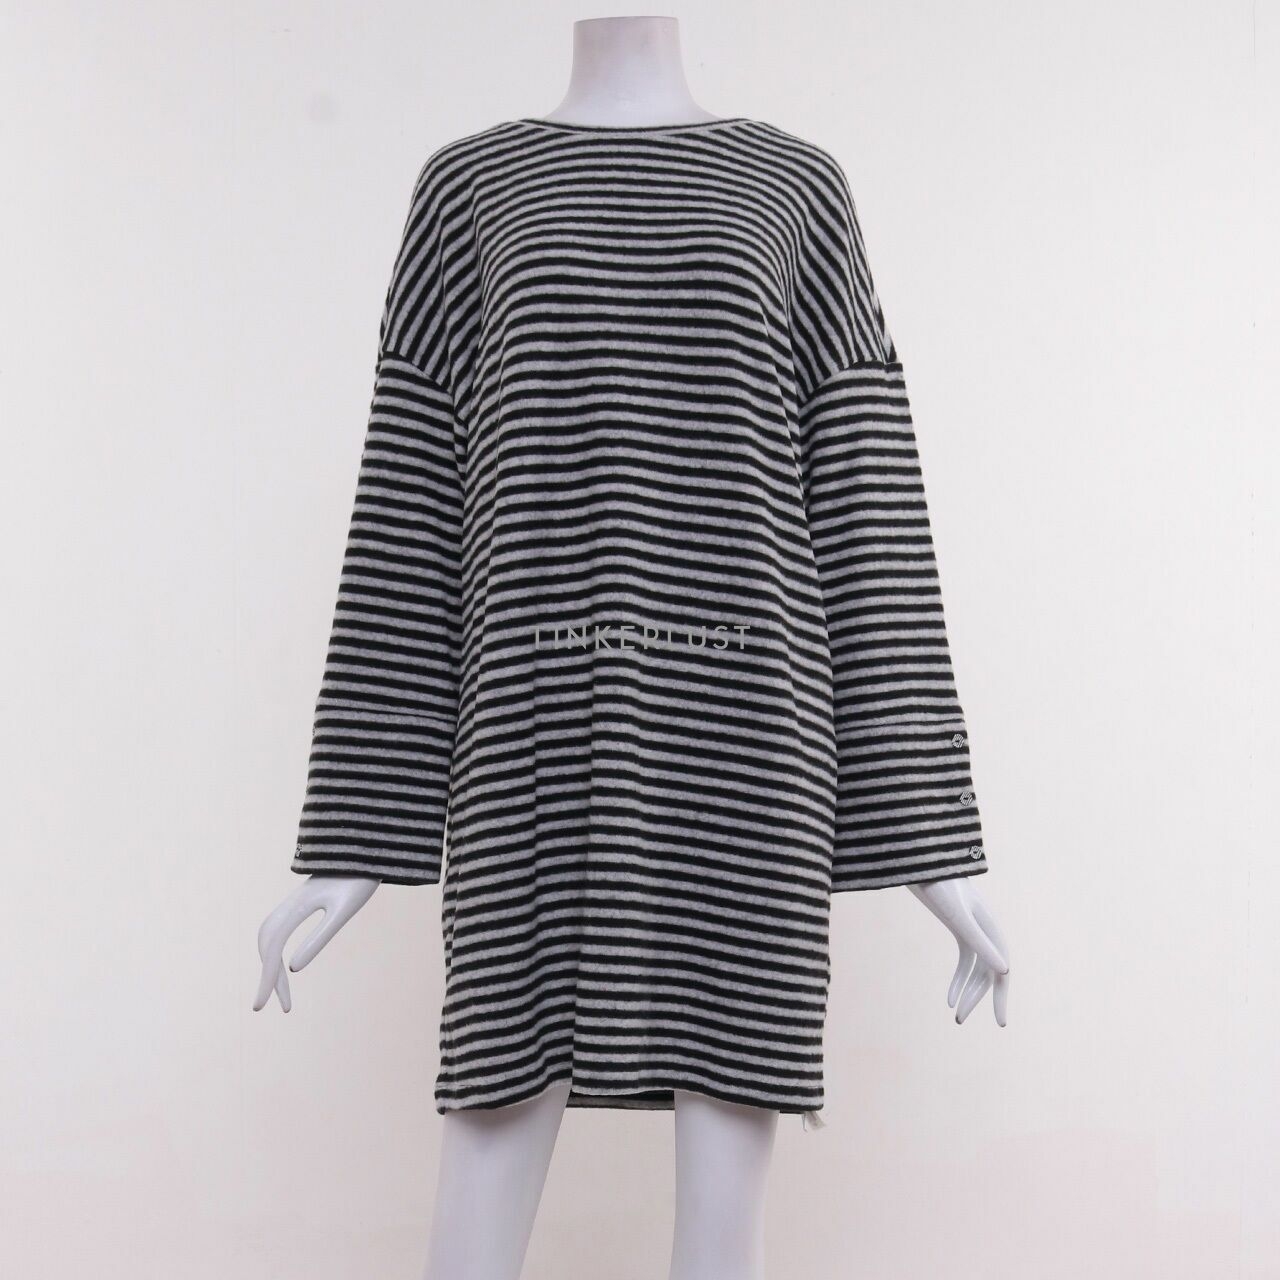 Home & Me Vero Moda Black & White Stripes Mini Dress